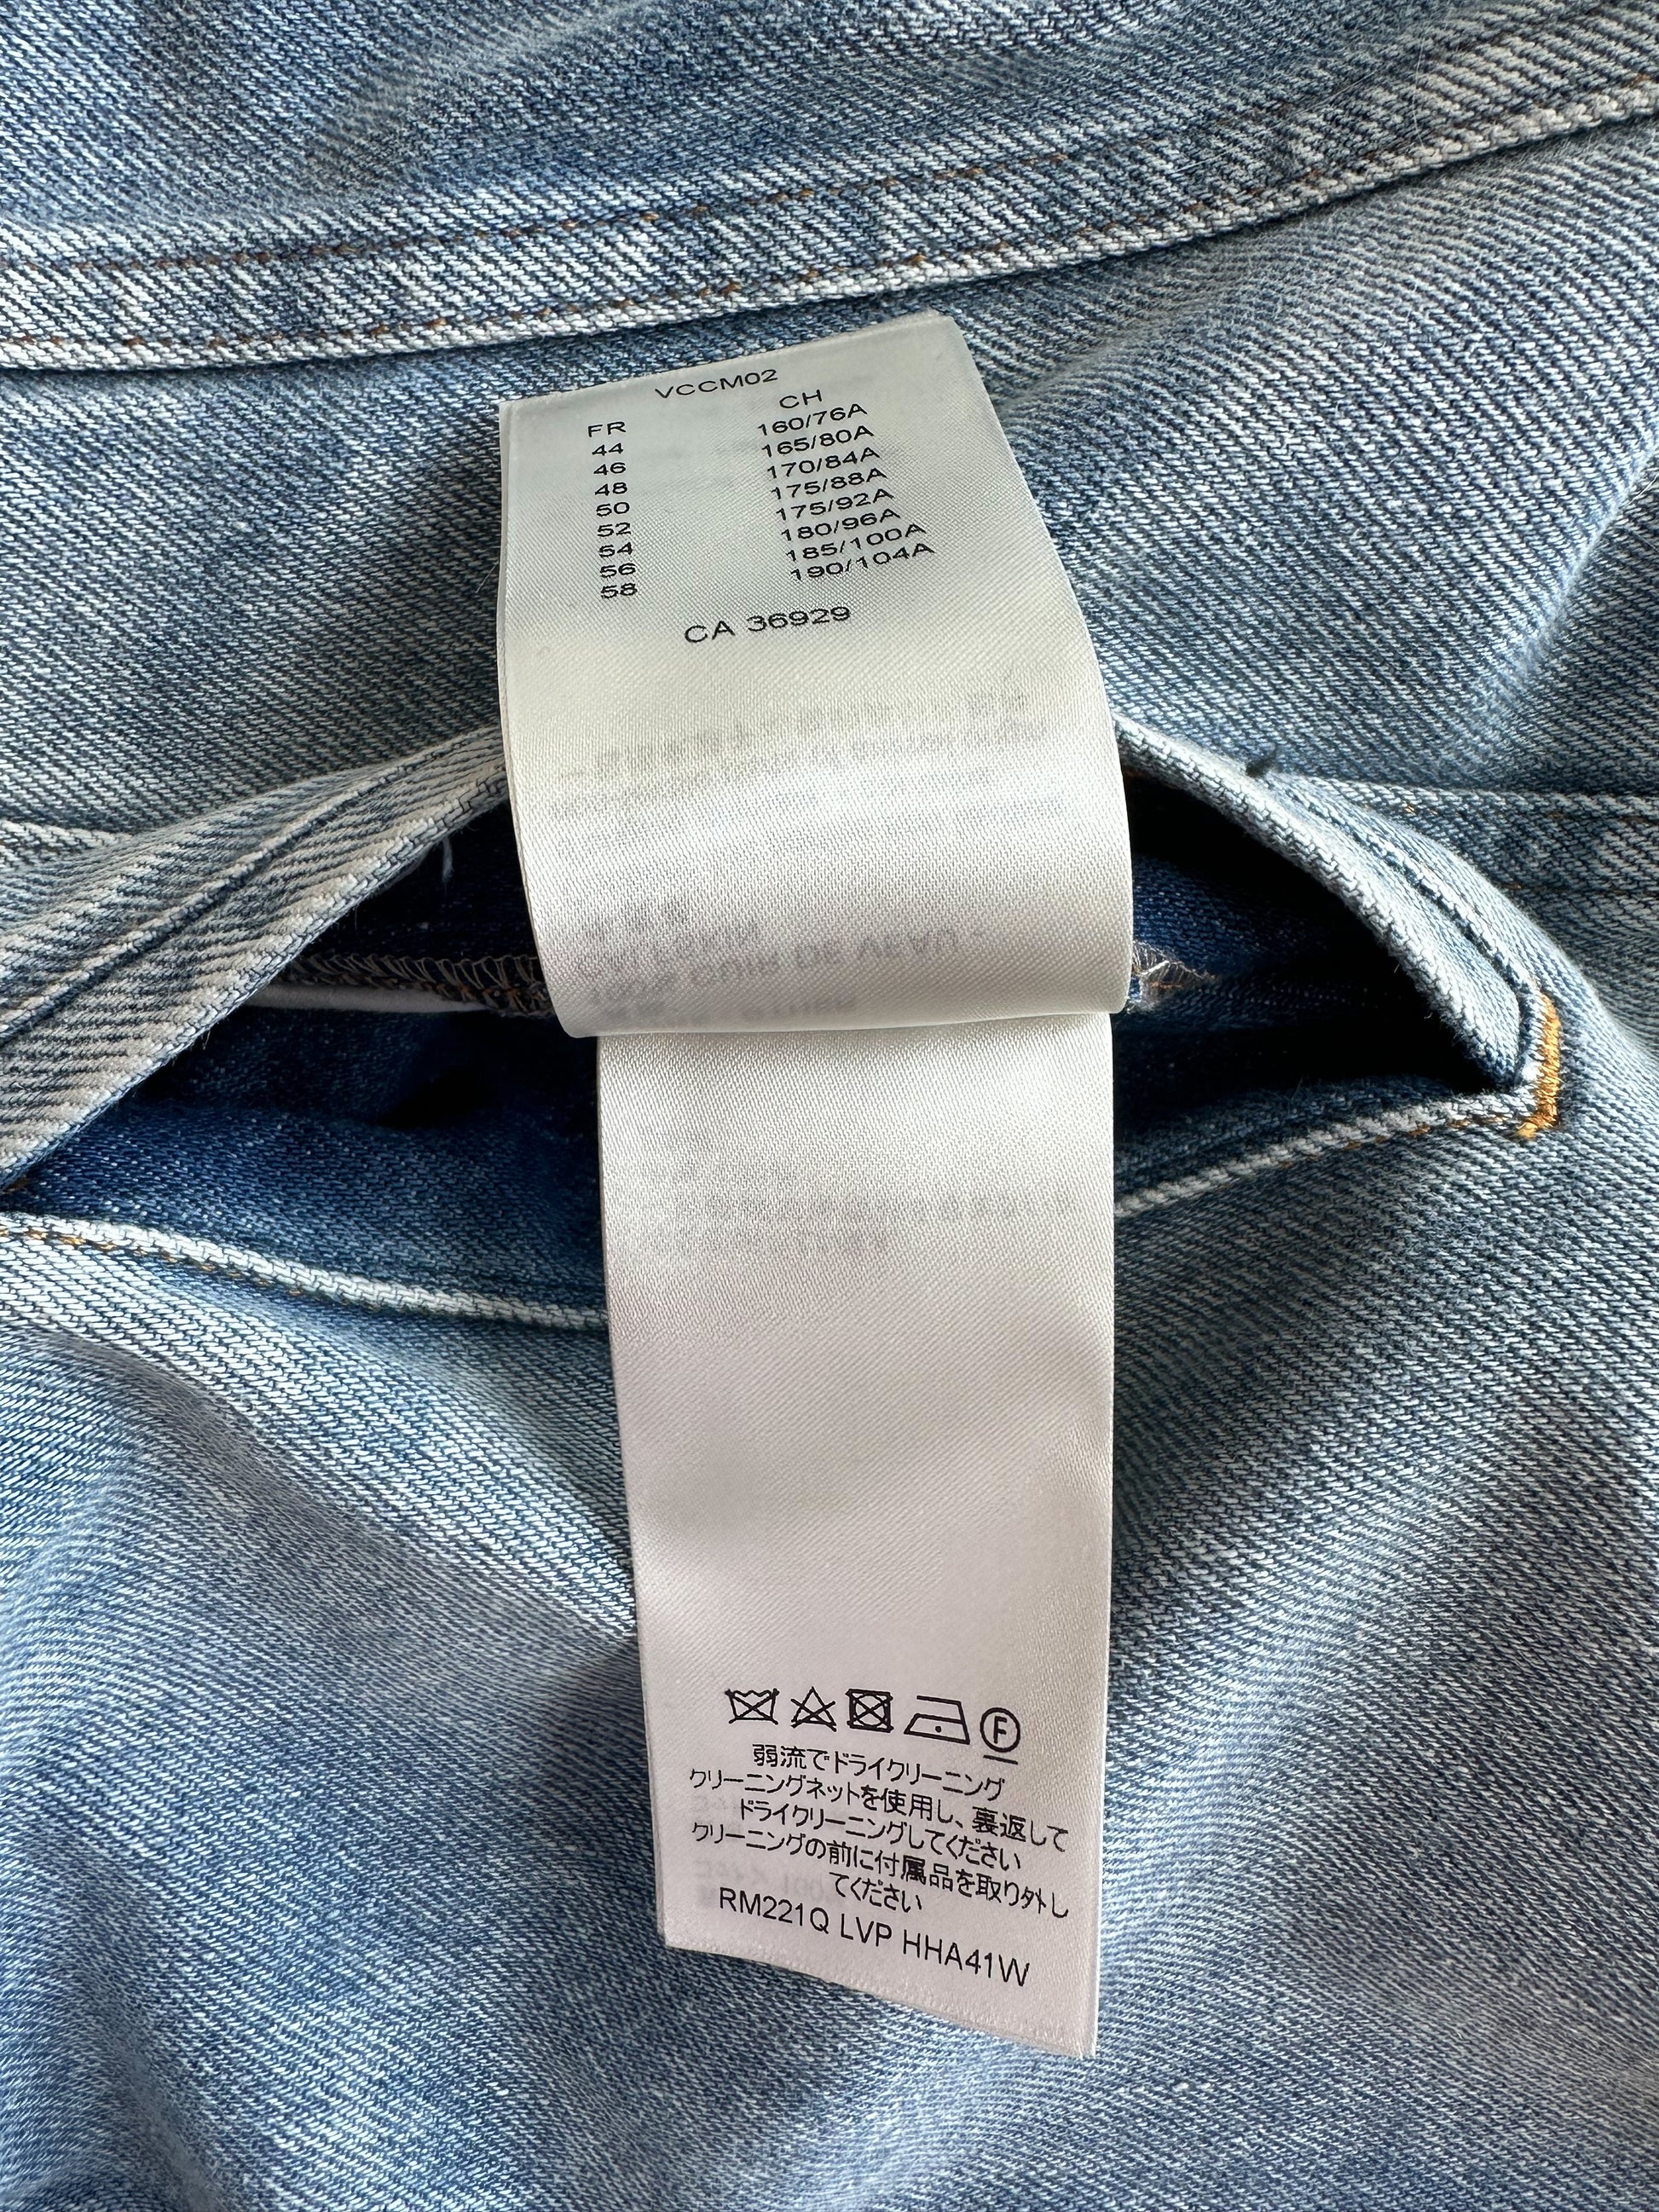 Louis Vuitton - Authenticated Jacket - Denim - Jeans Blue Plain for Women, Never Worn